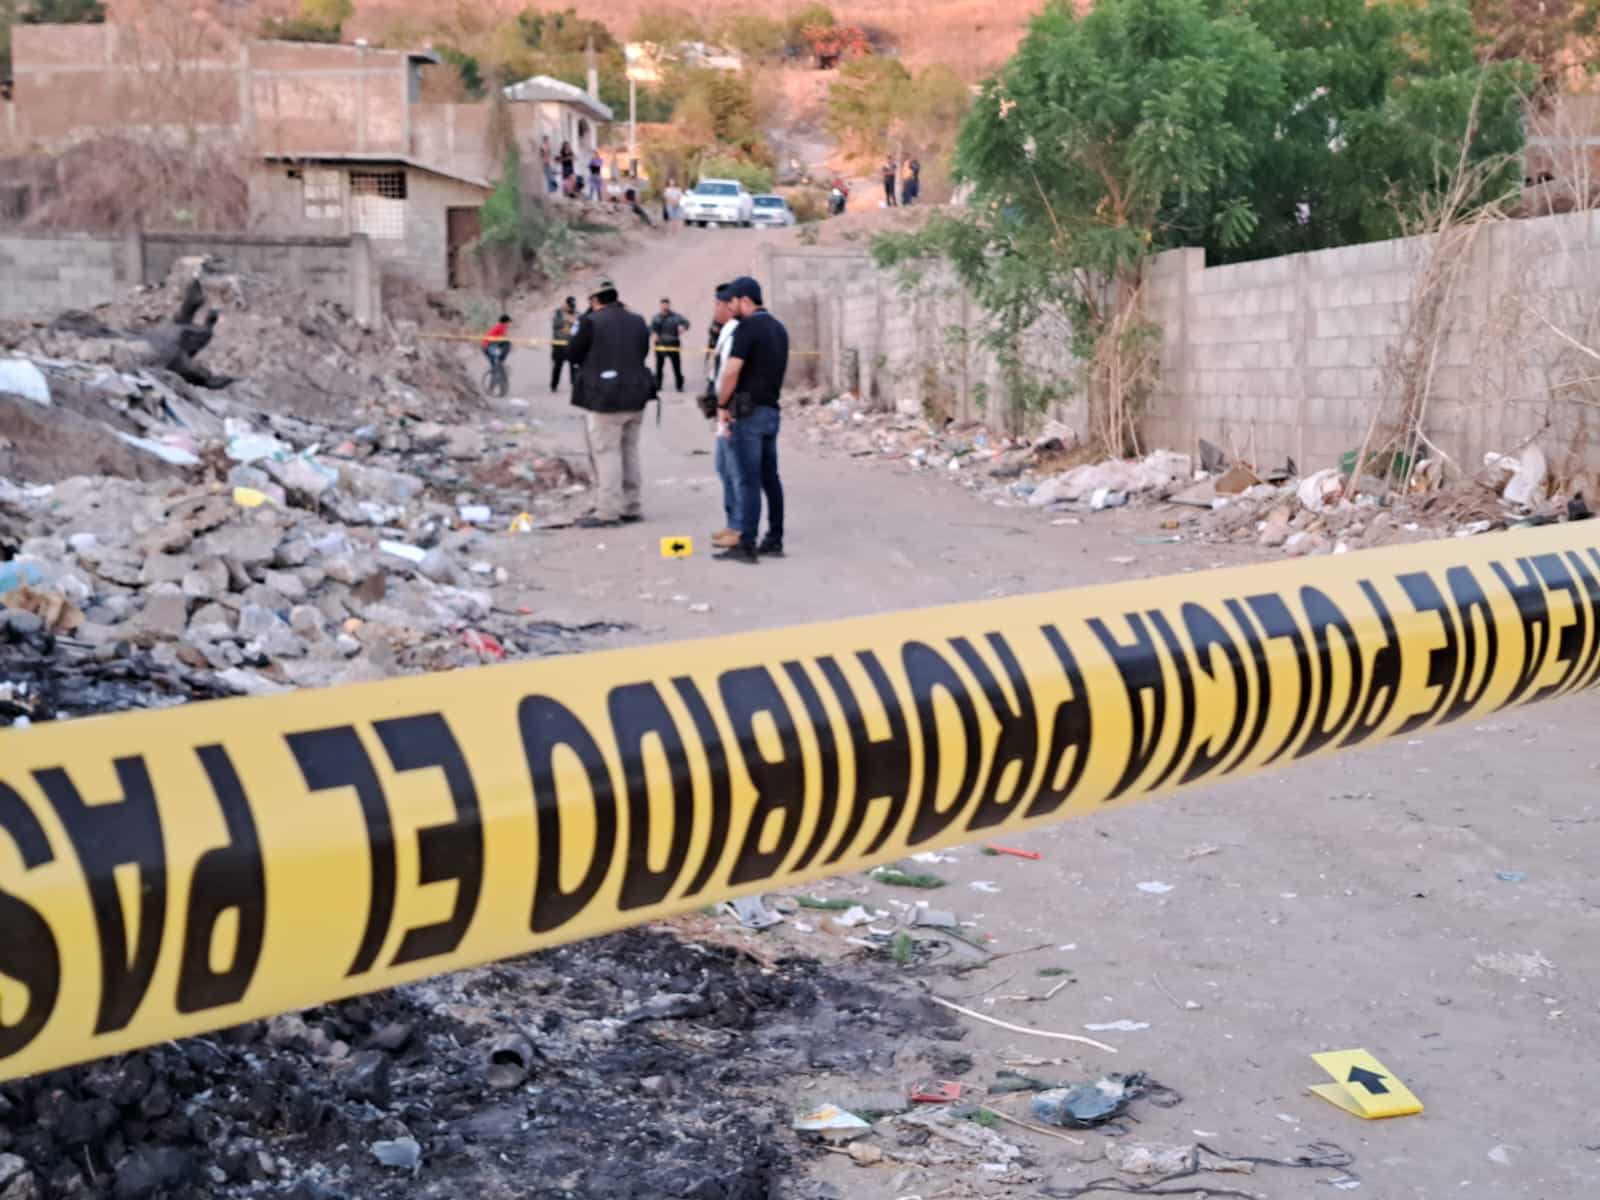 Policia hallan un cuerpo en Culiacán